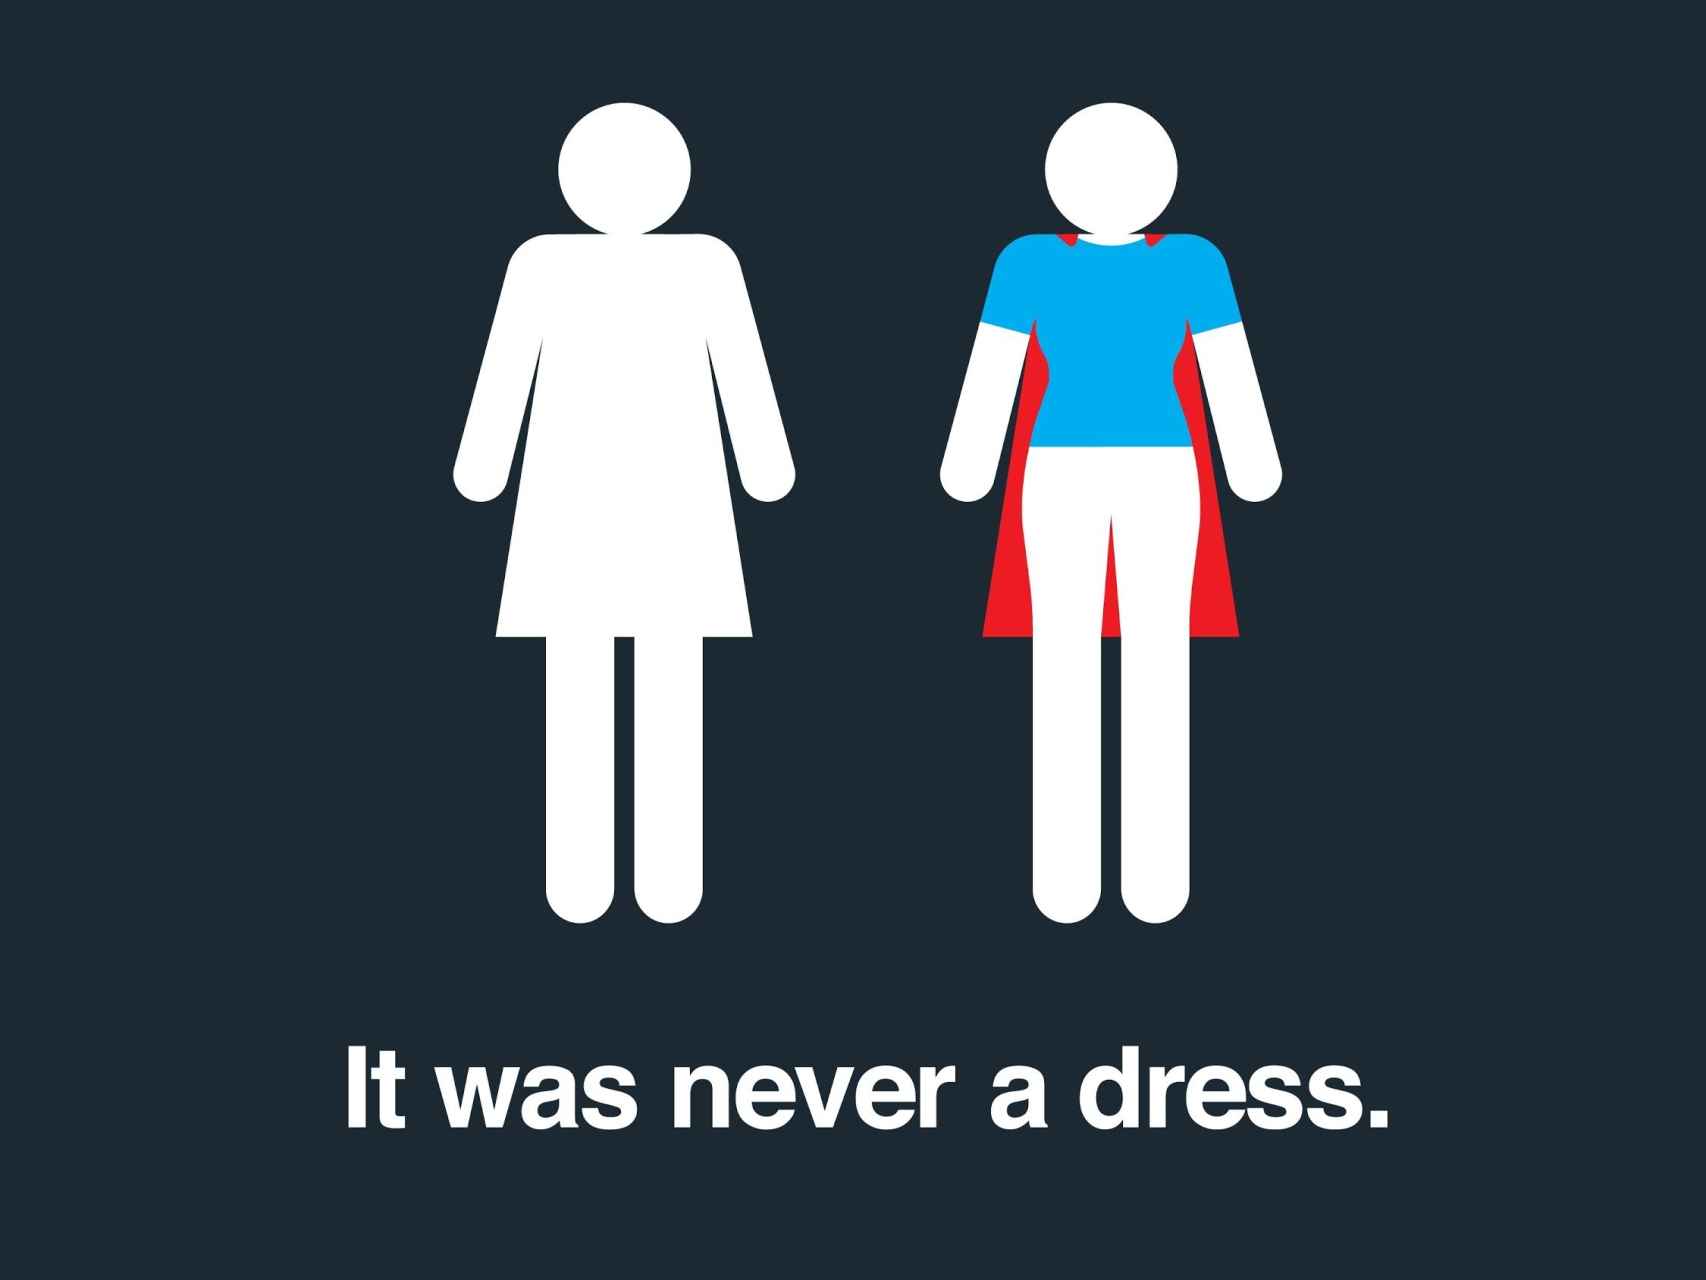 Imagen de la campaña "nunca fue un vestido"